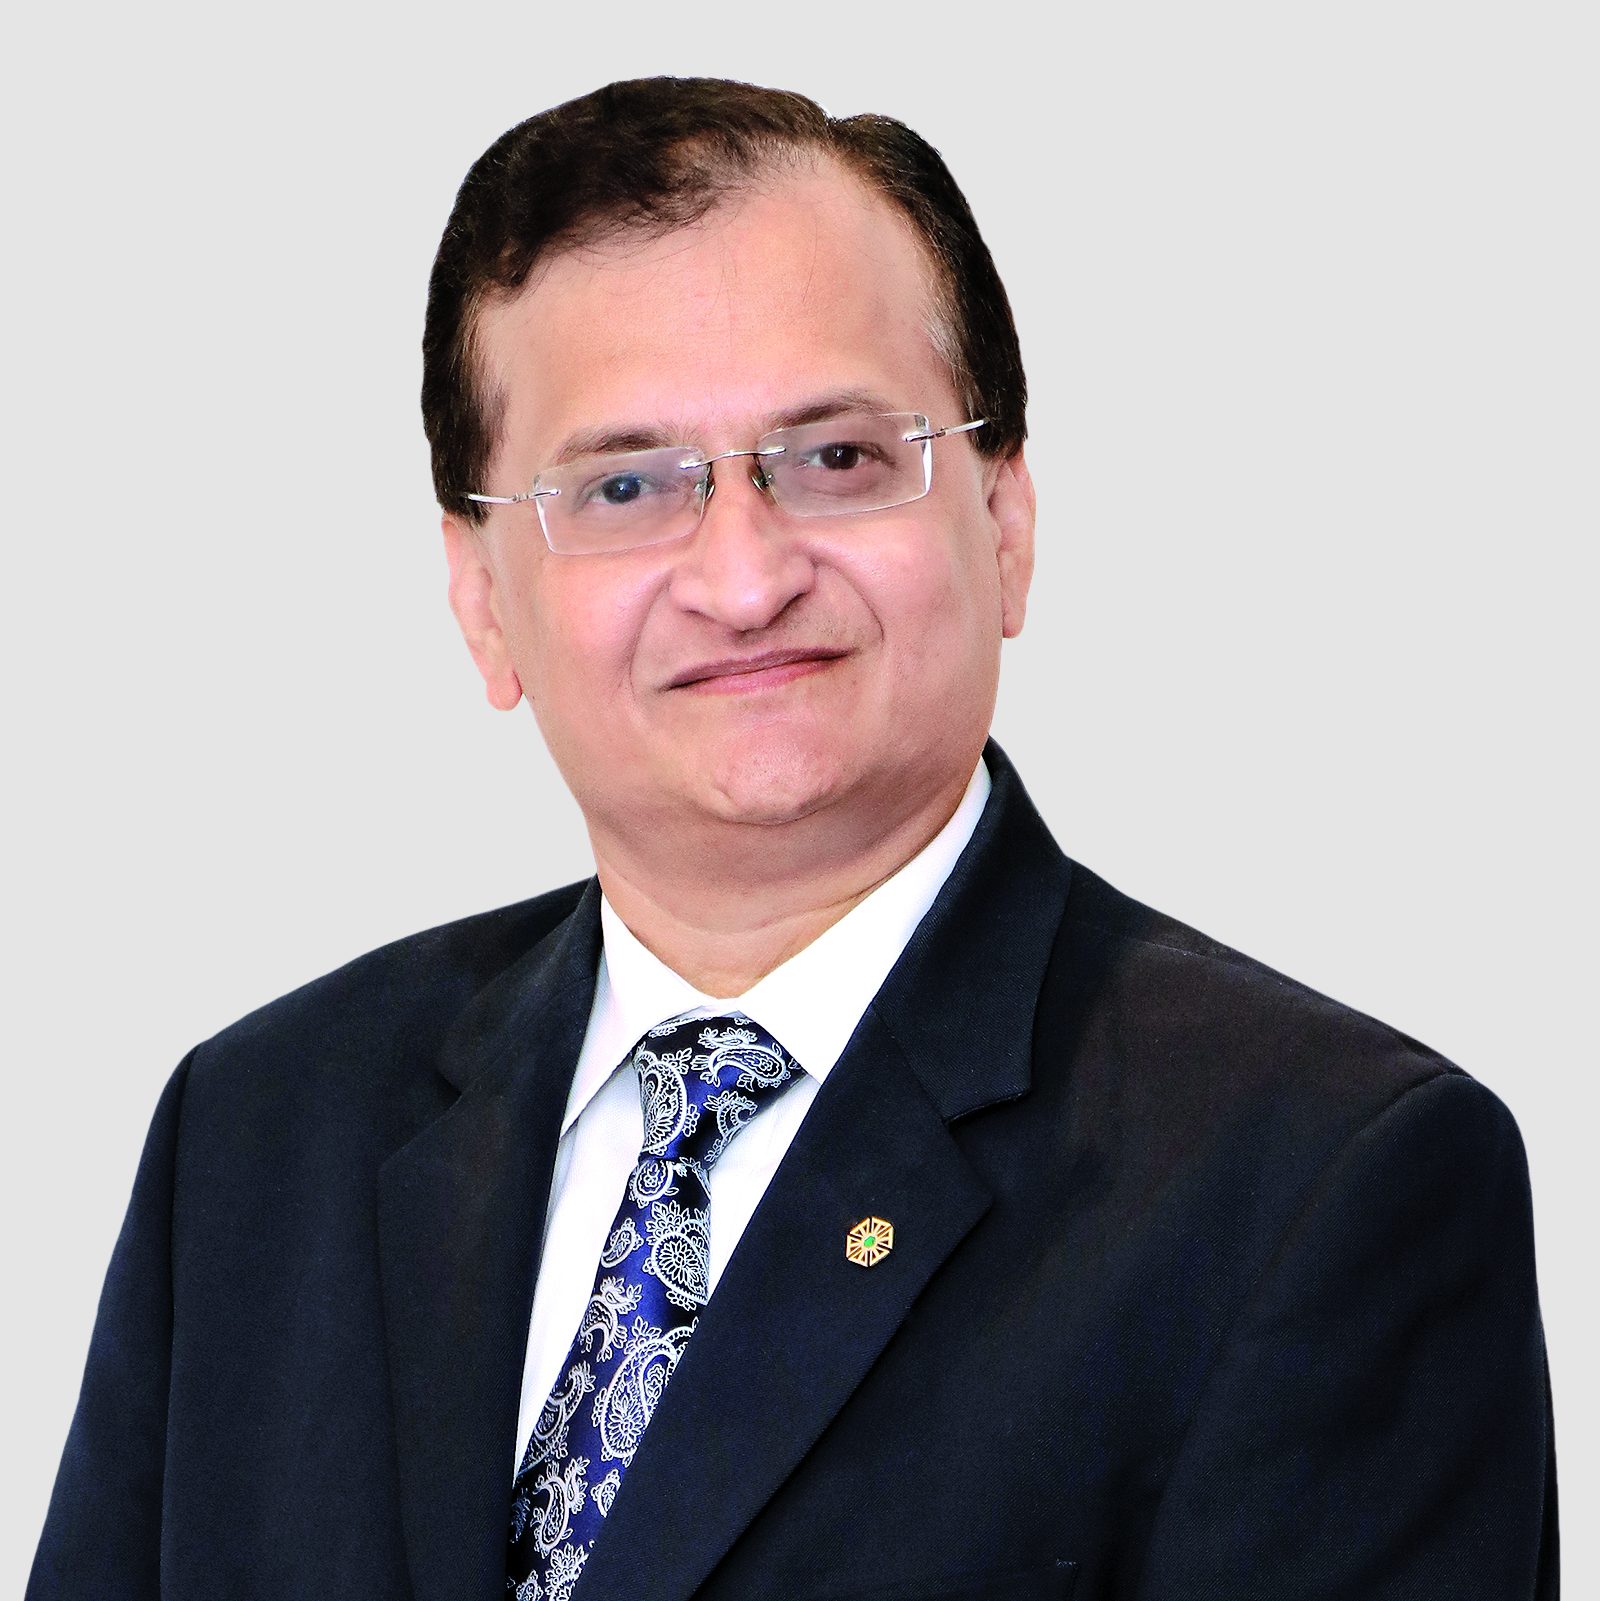   Beejal Desai- Vicepresidente Ejecutivo - Asuntos Corporativos y Secretario de la Compañía (Grupo) - IHCL